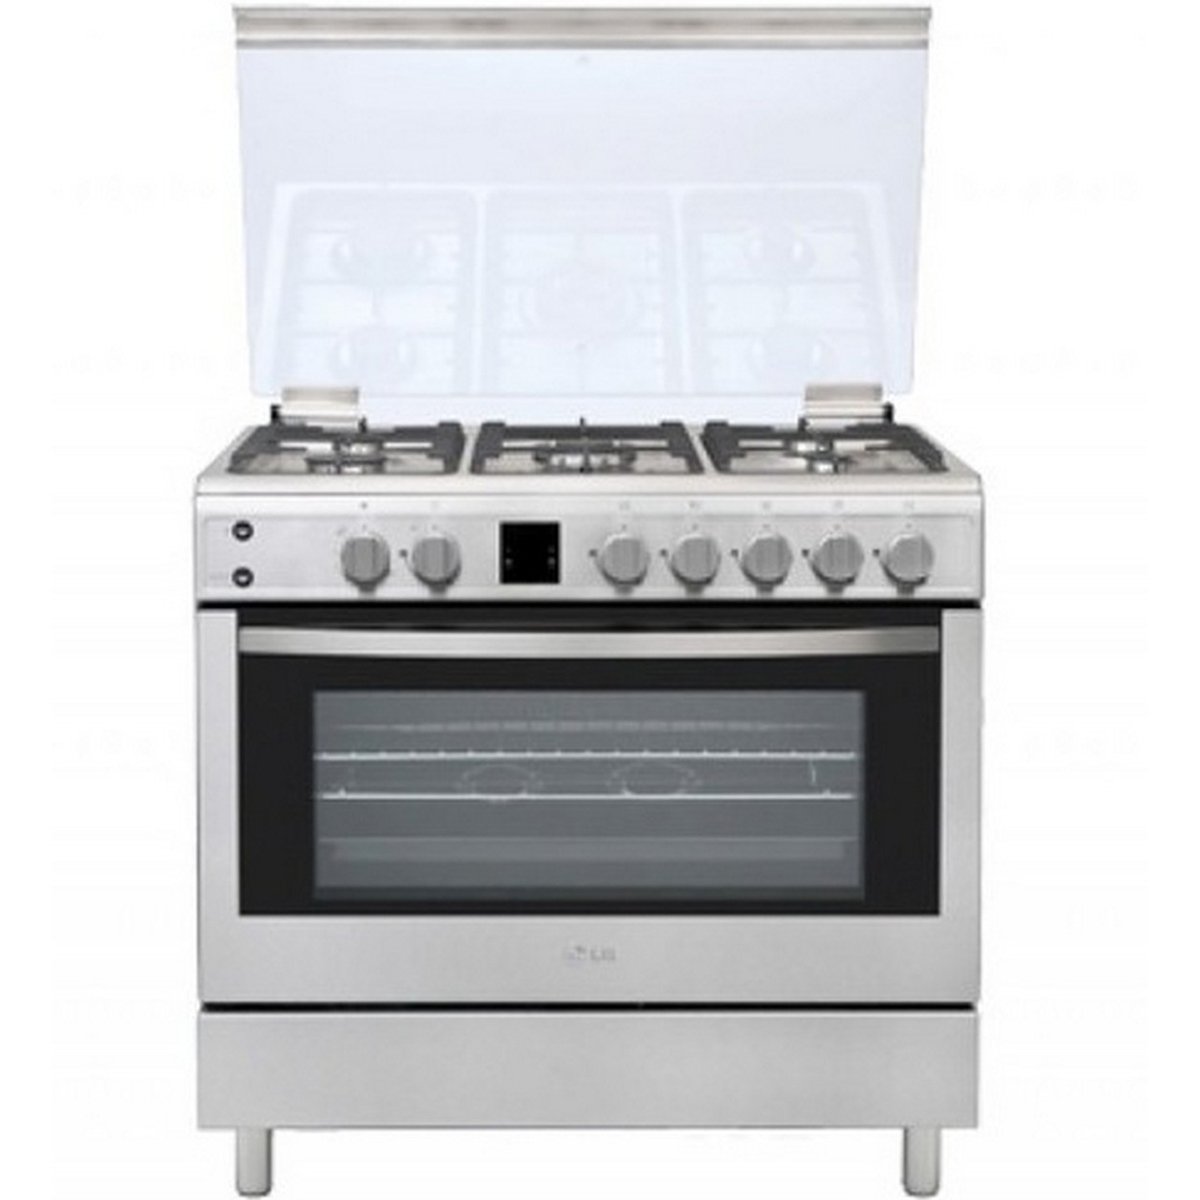 LG Cooking Range LF98V05S 90x60 5Burner